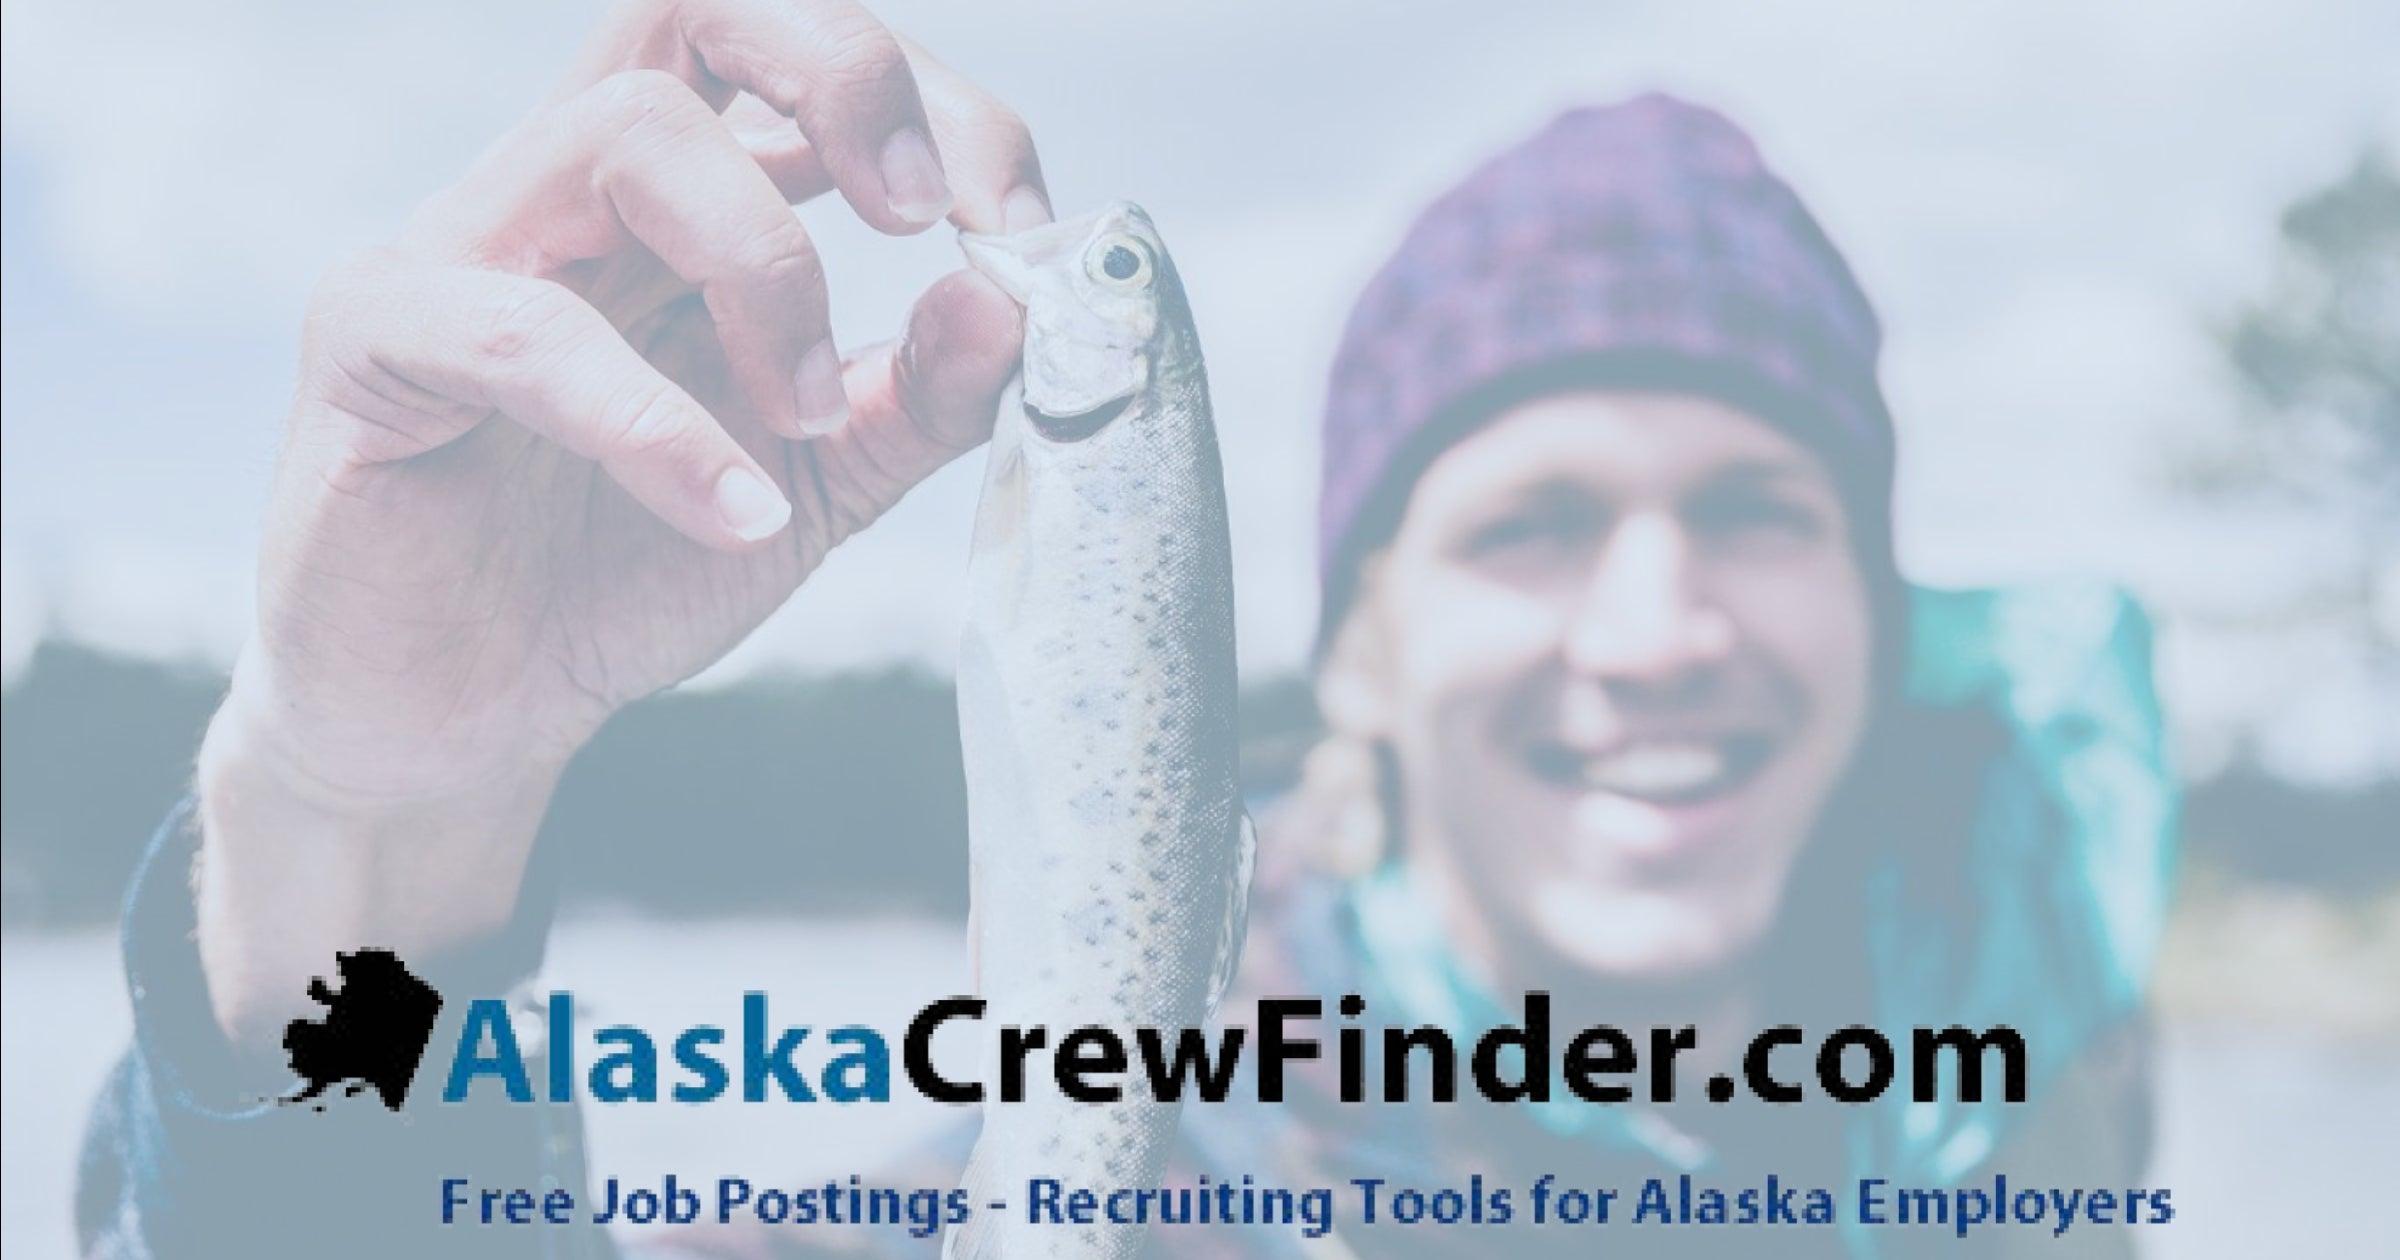 AlaskaCrewFinder